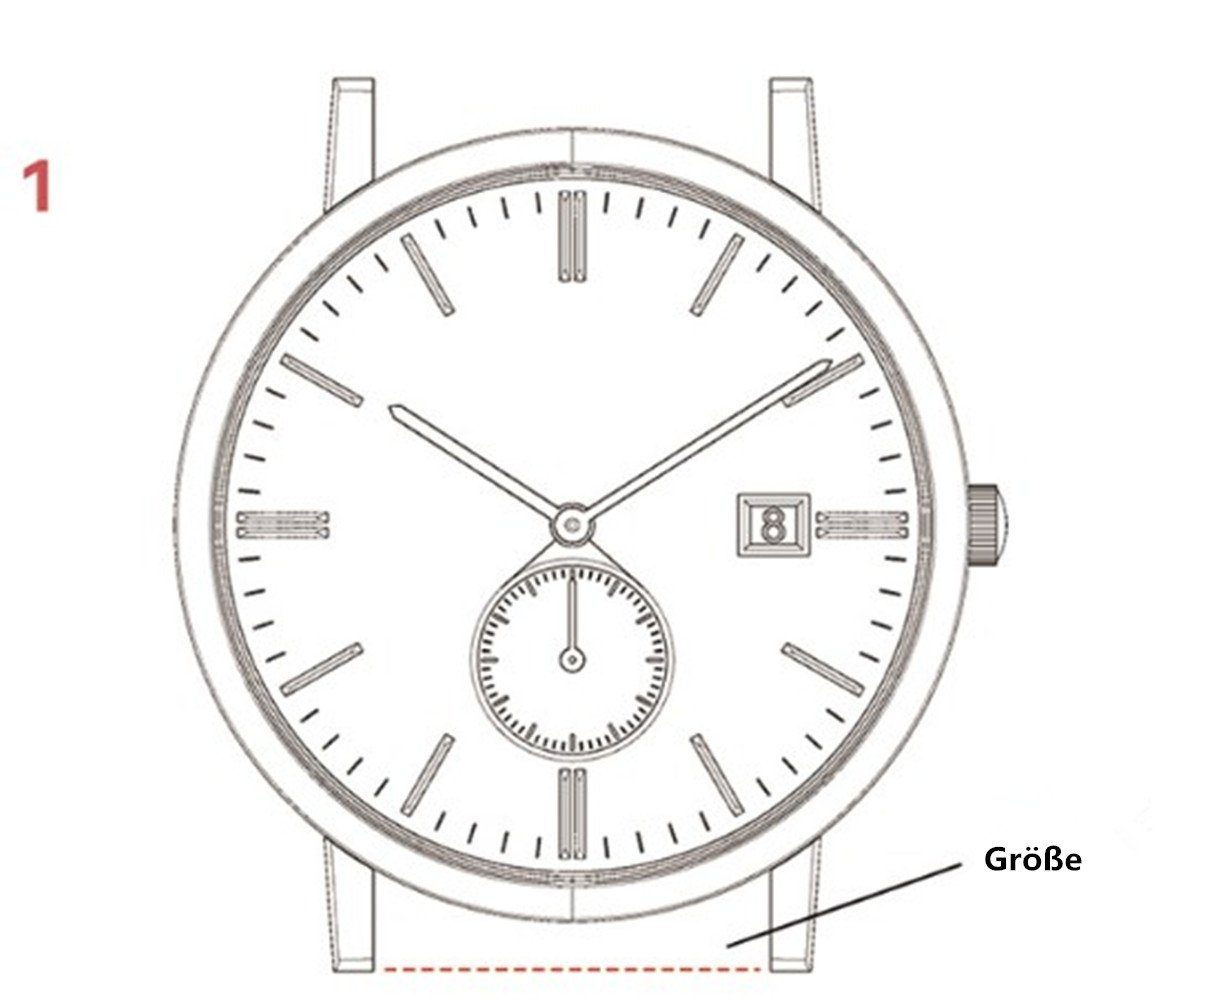 Magnet Metall und Armband Series 38/40/41mm Verbesserter Ersatzarmband für für Uhrenarmband Watch Apple XDeer 42/44/45mm, mit Armband iWatch 8/7